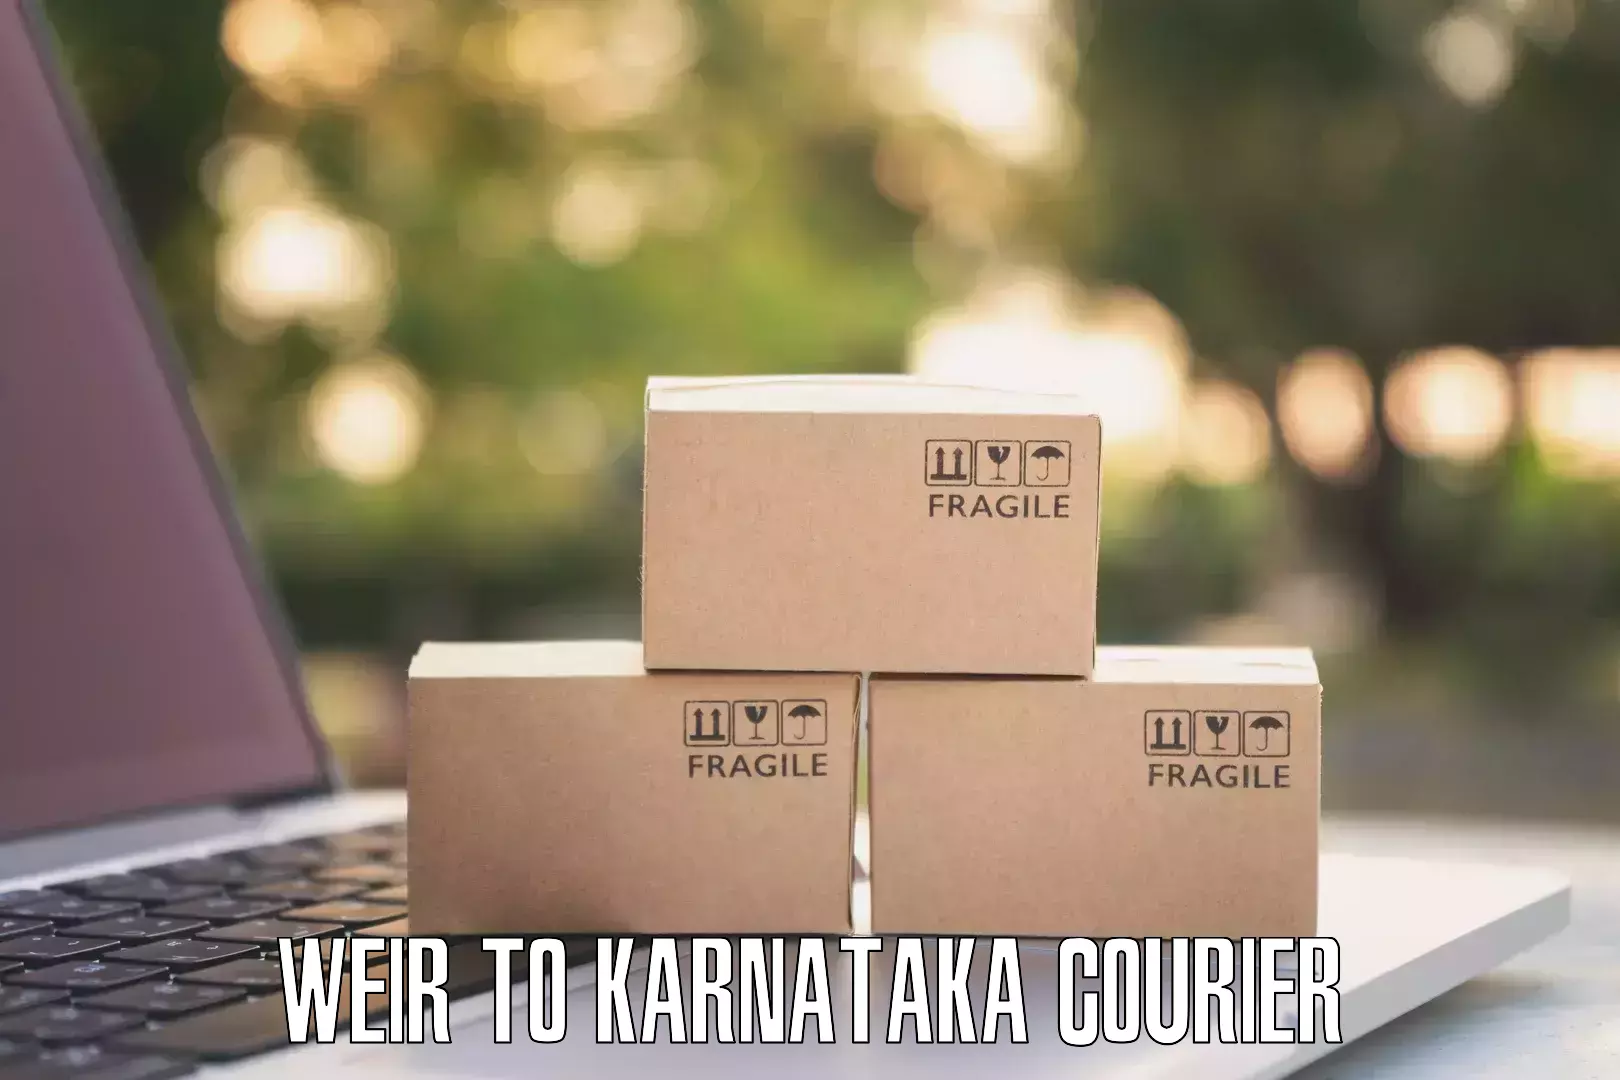 Quick parcel dispatch Weir to Karnataka